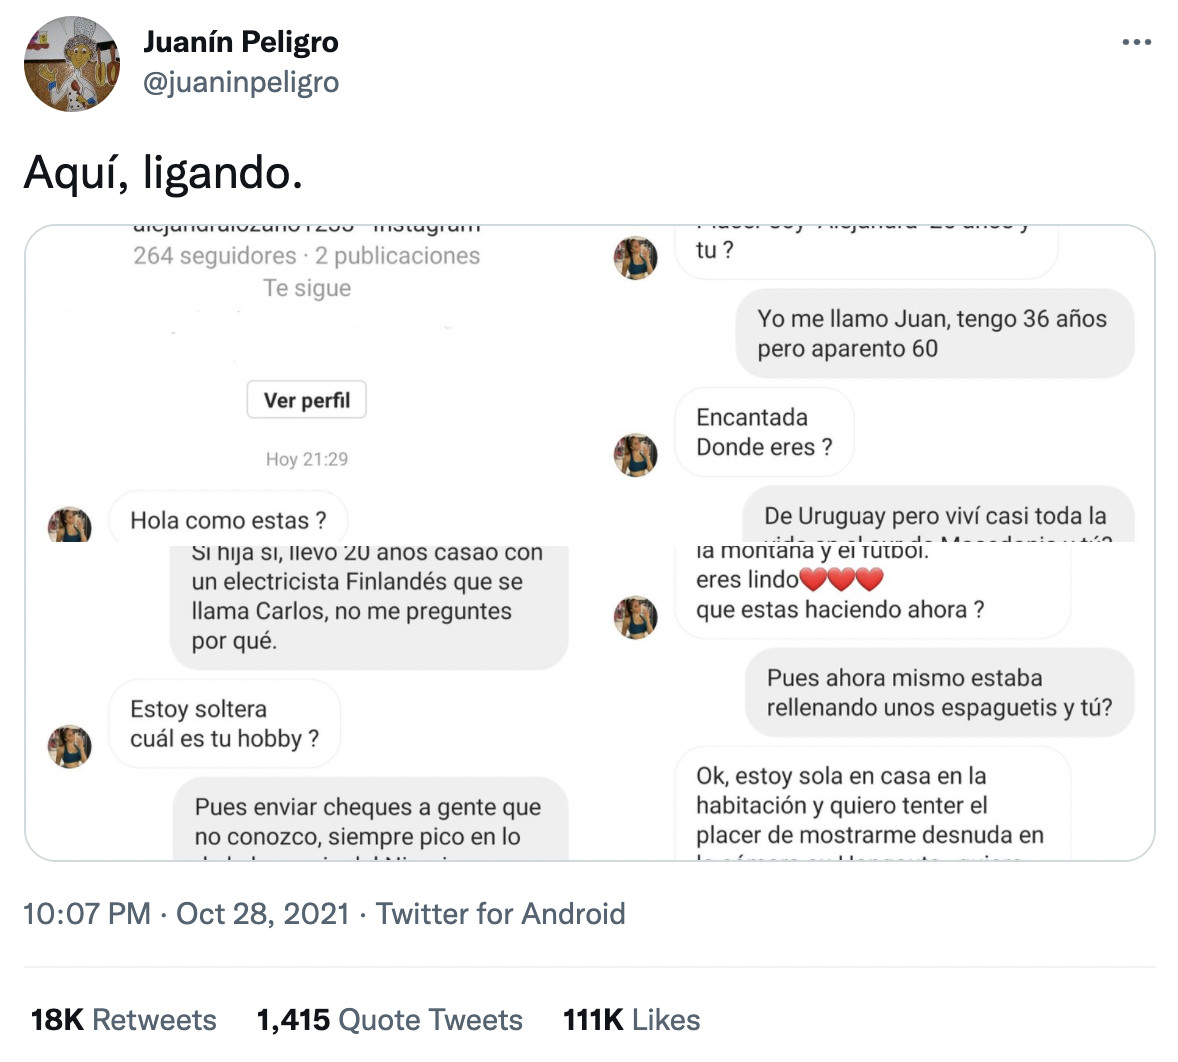 Juanín Peligro y su tweet viral / TWITTER